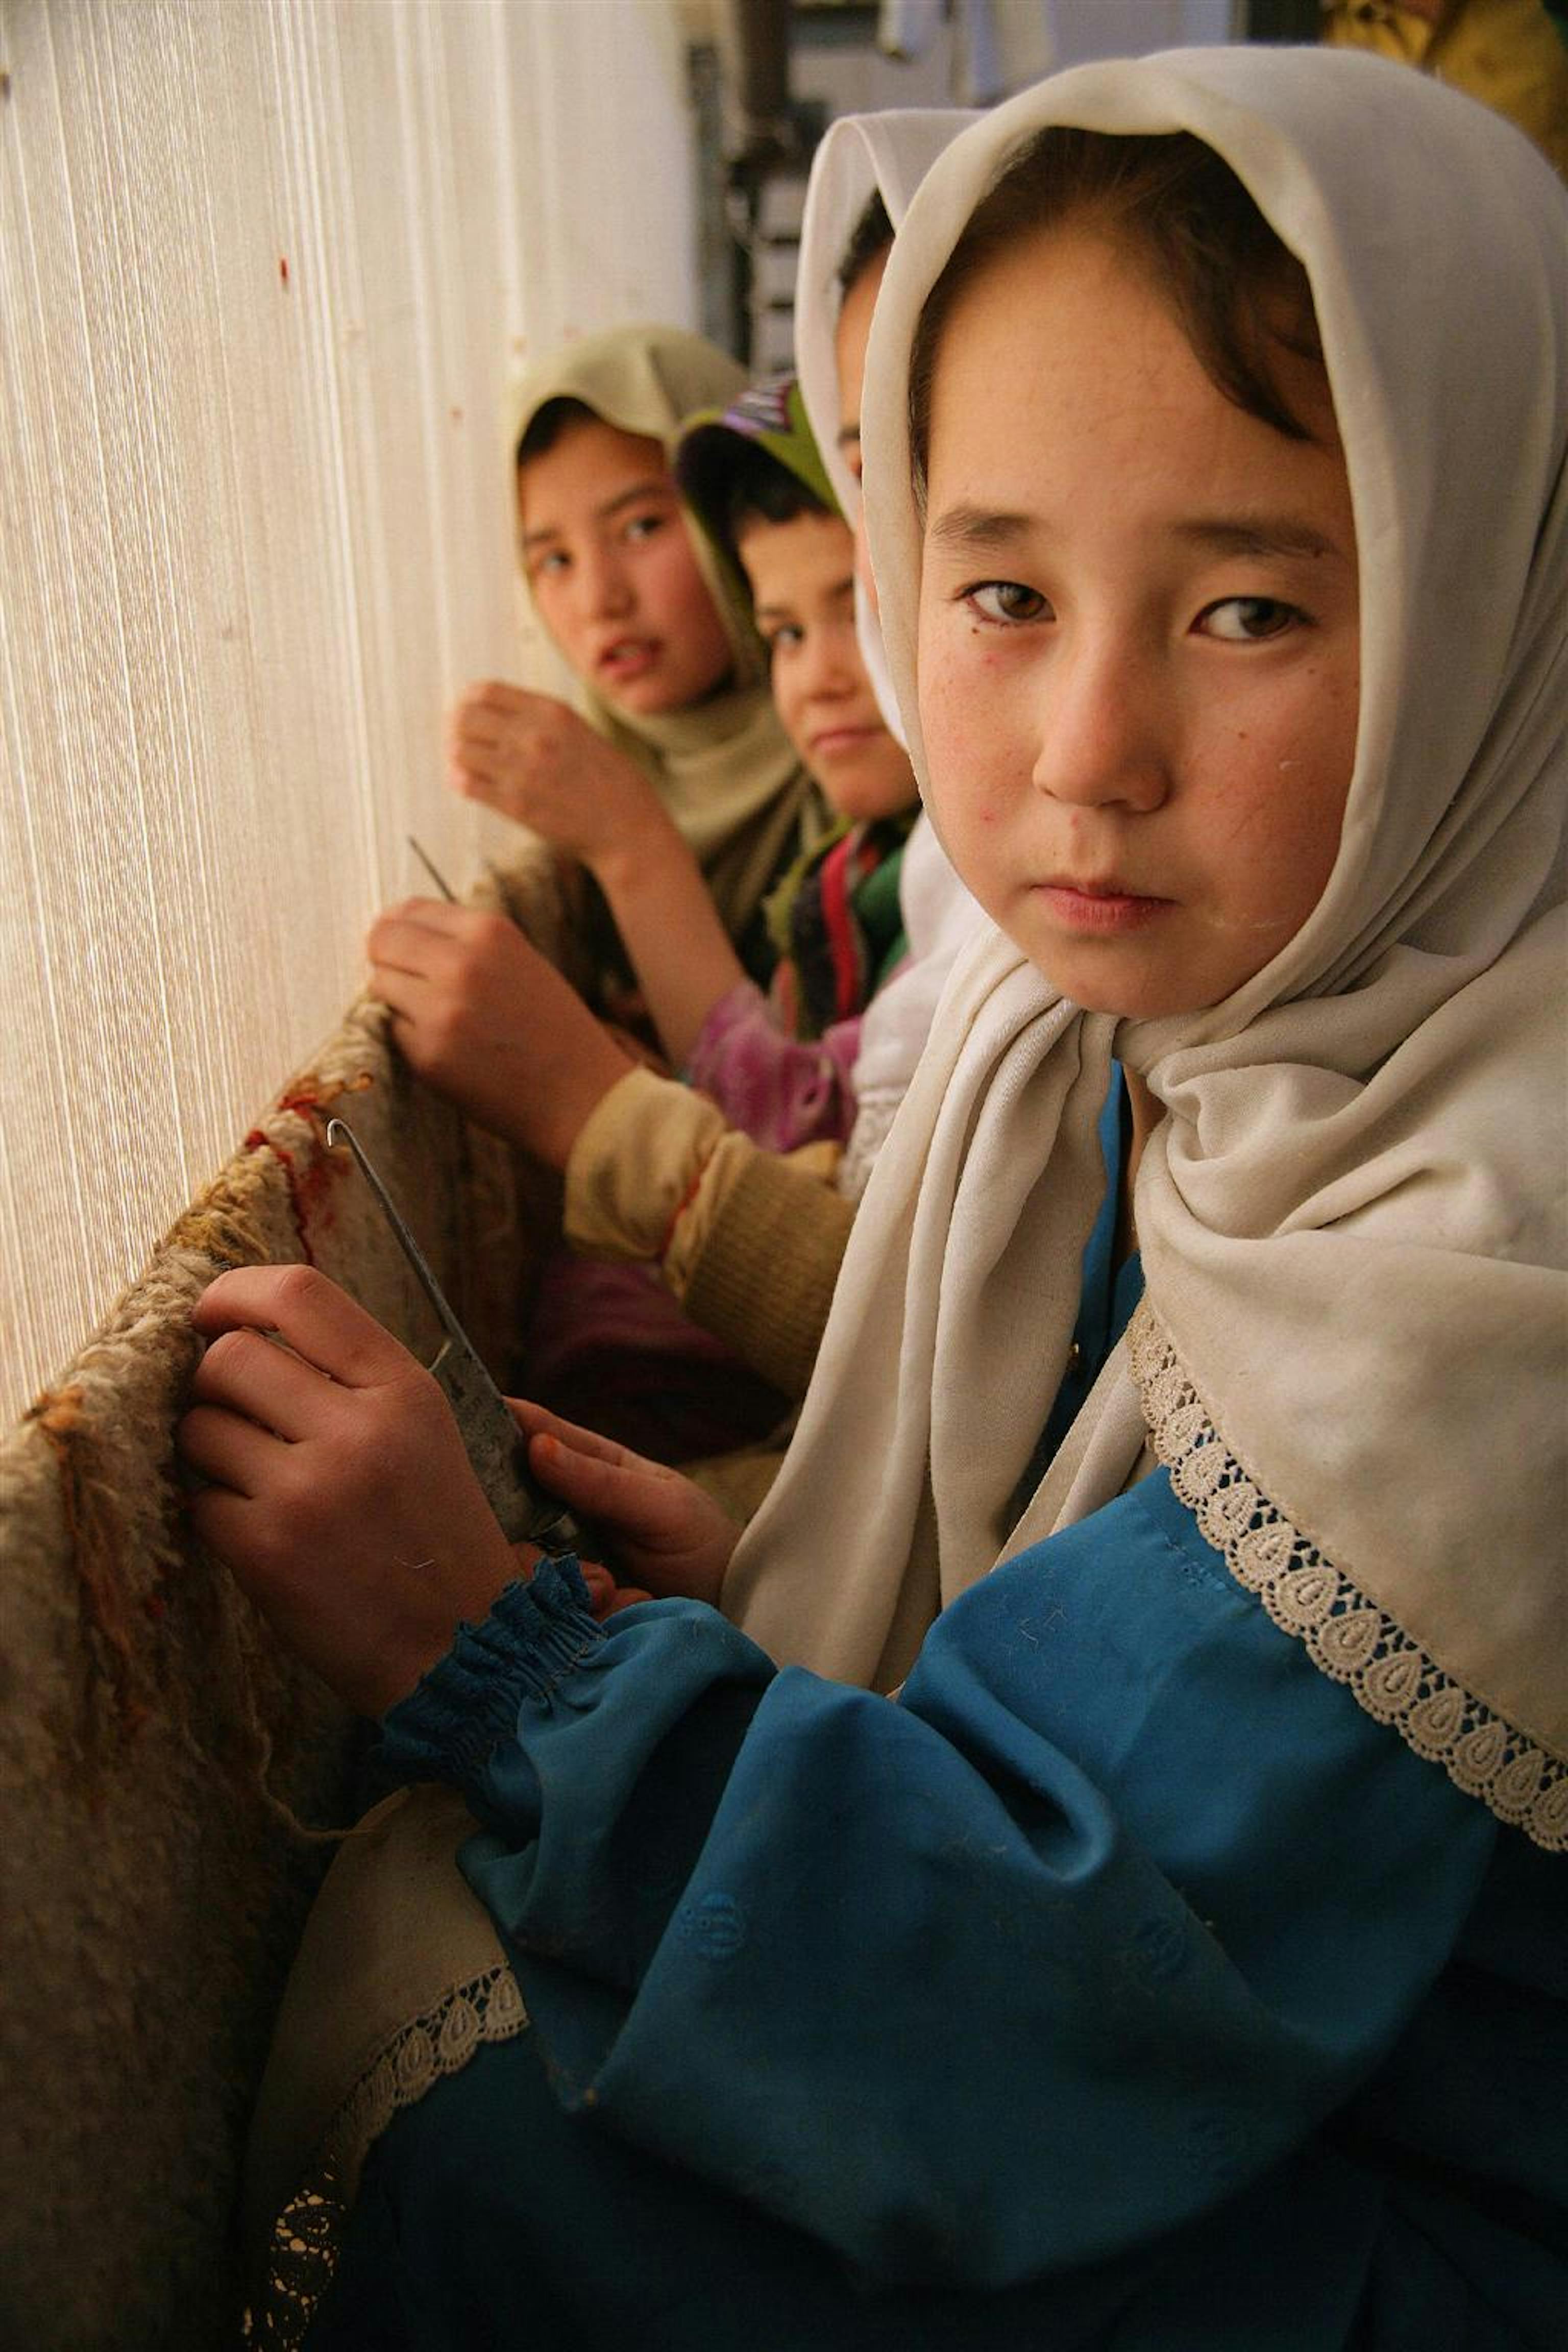 Bambine tessono un tappeto in una grande fabbrica tessile nei dintorni di Quetta, in Pakistan, nonostante nel paese sia illegale lo sfruttamento di manodopera minorile - ©UNICEF/HQ06-0350/G.Pirozzi